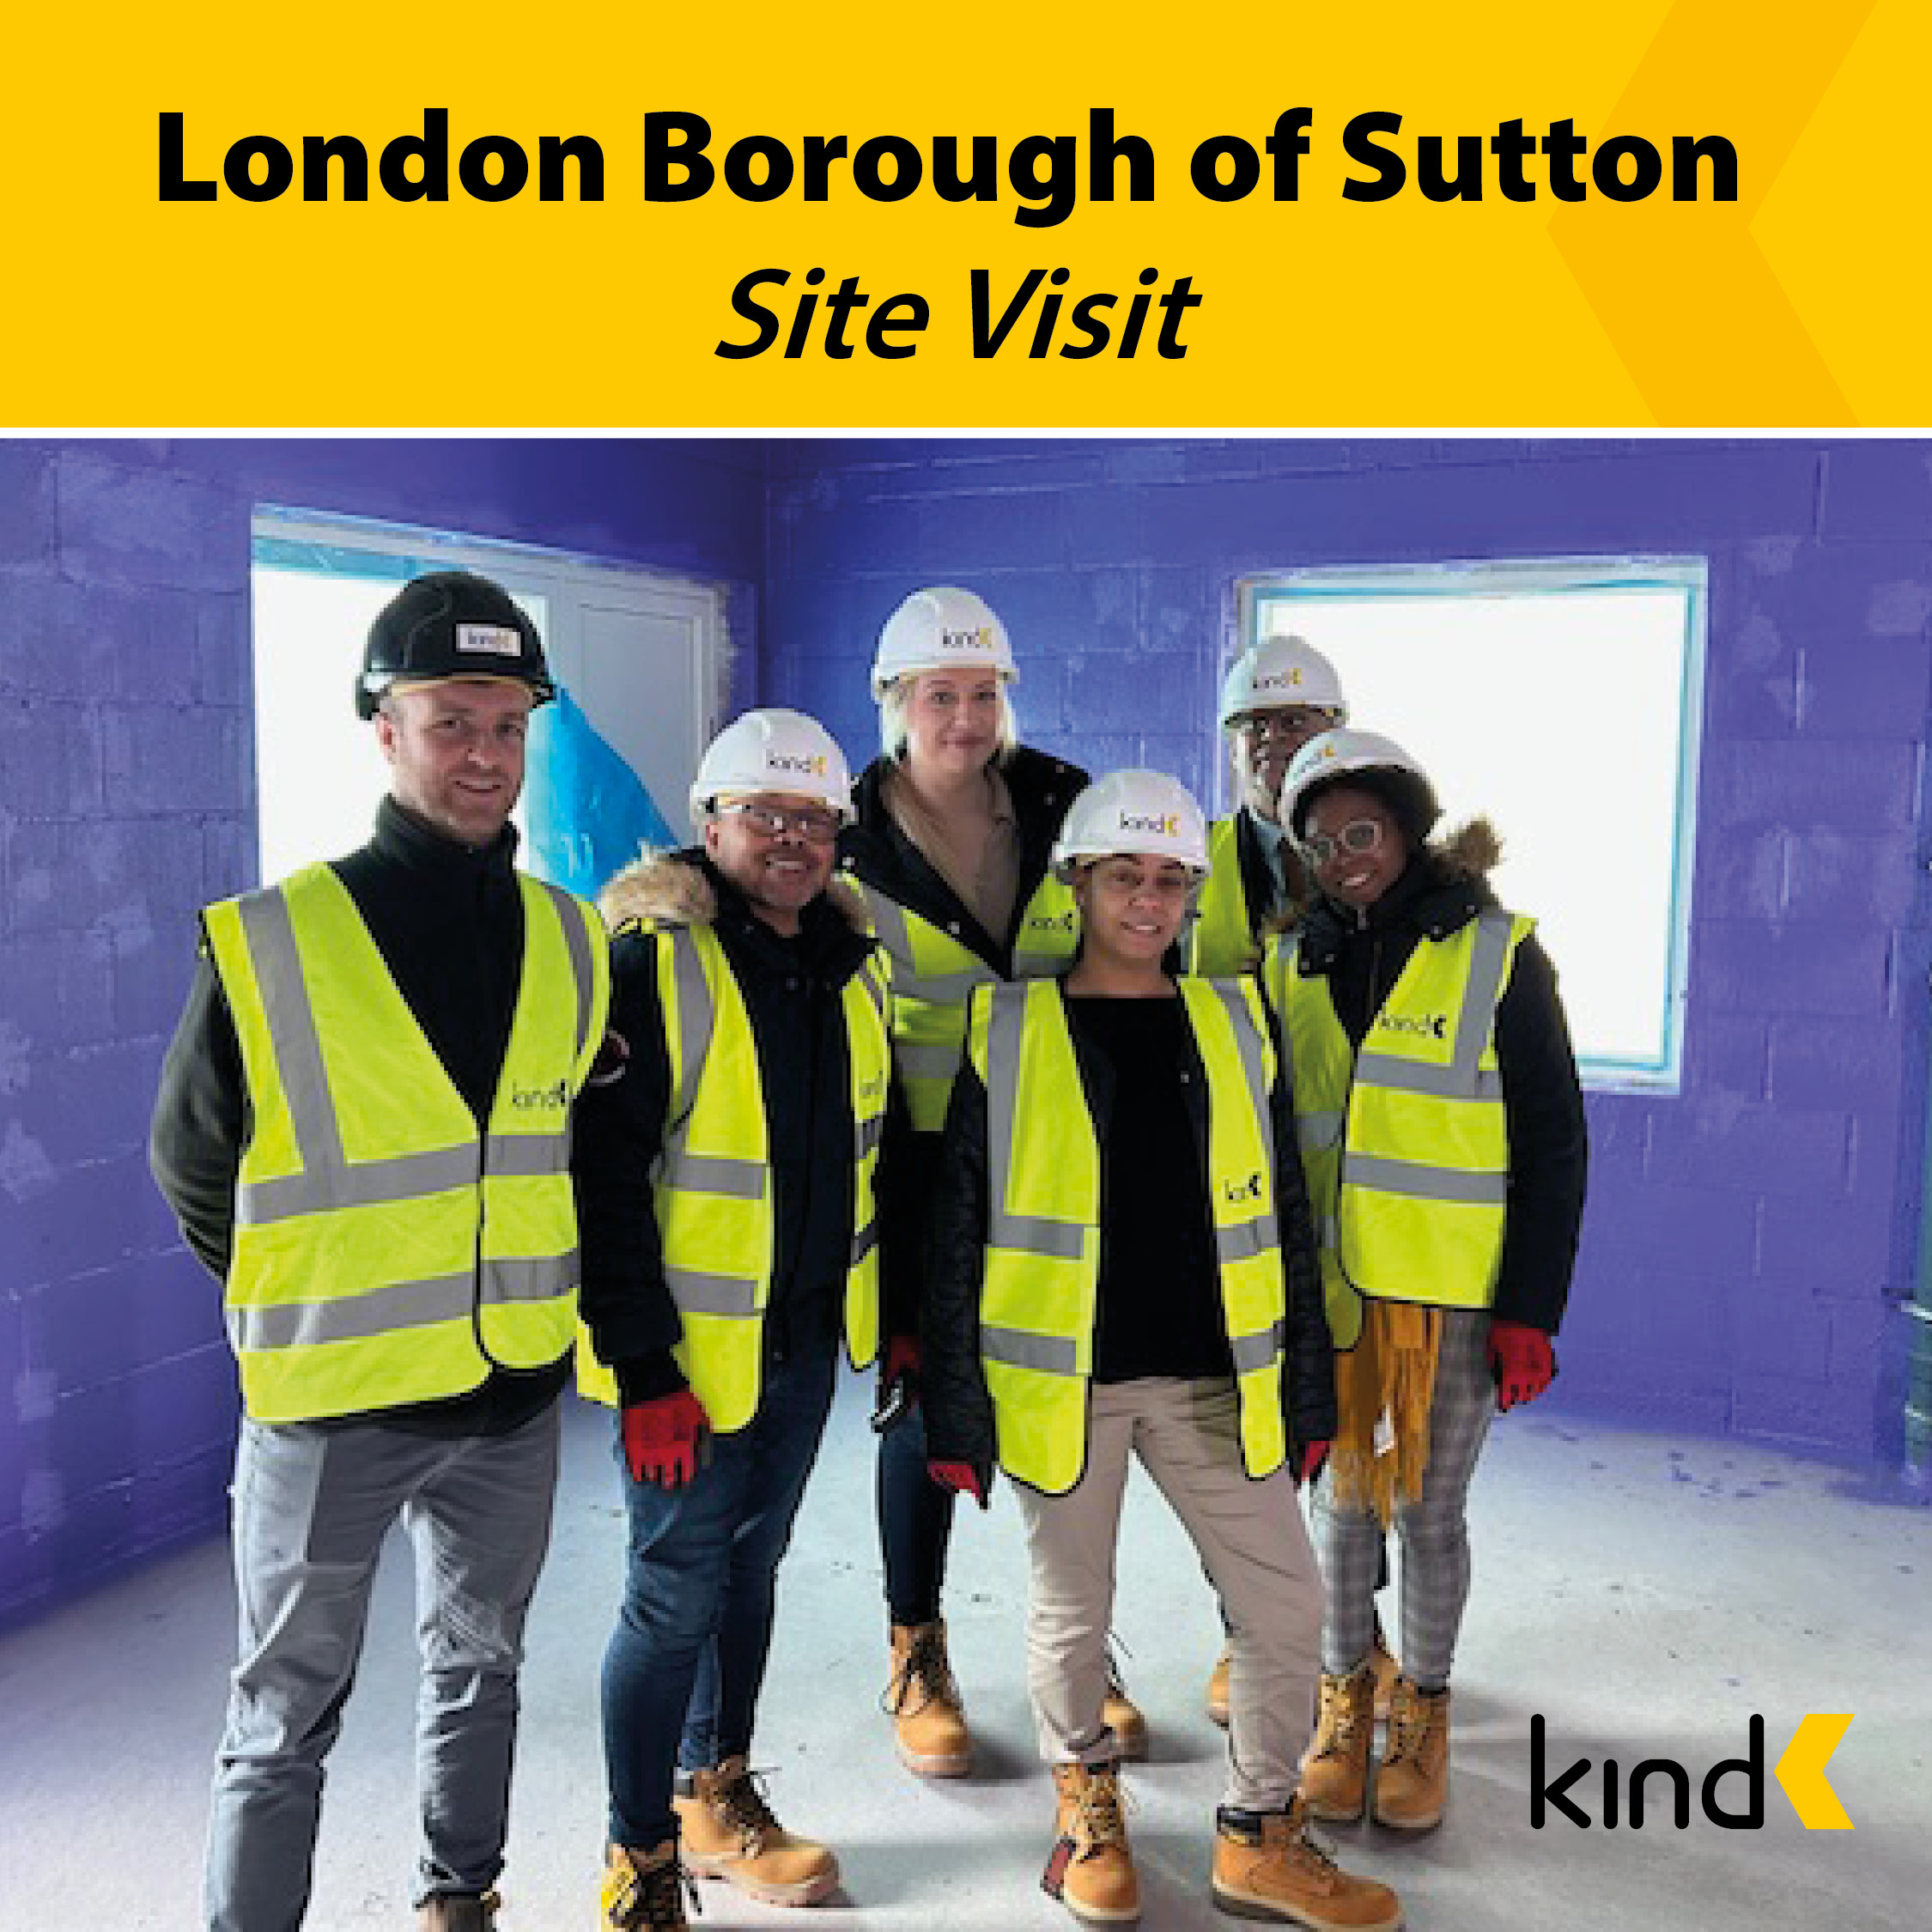 London Borough of Sutton Site Visit image